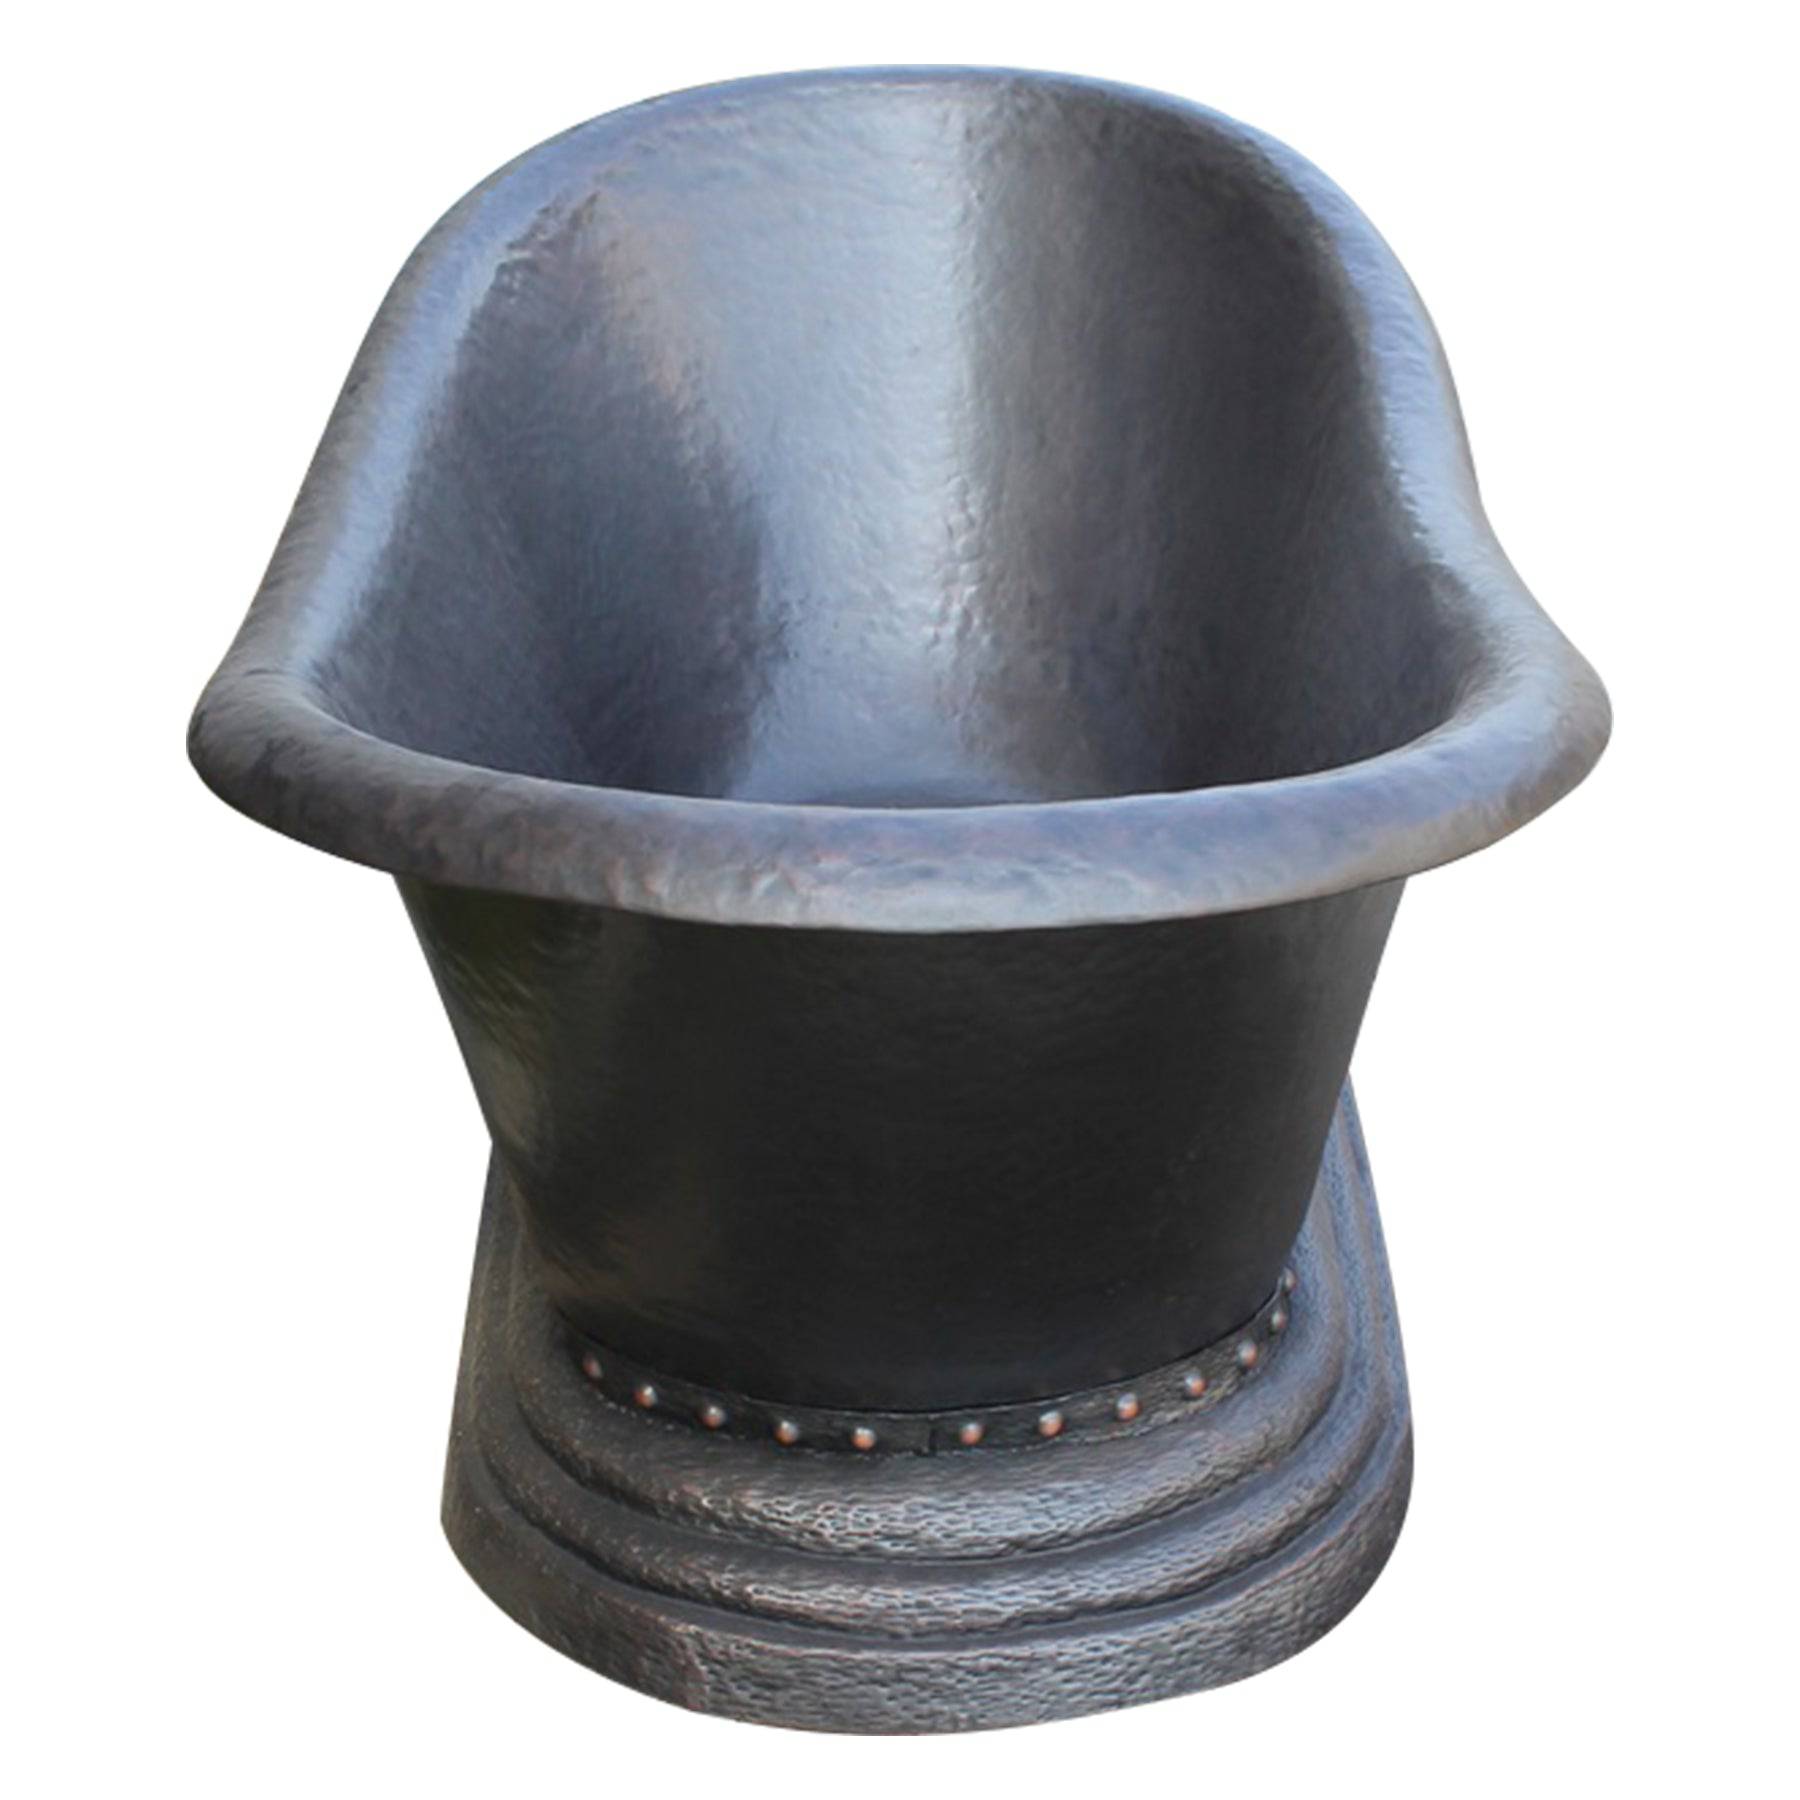 Fobest Handmade Double-Slipper Custom Oil Rubbed Bronze Copper Bathtub FBT-2 - -Fobest Appliance